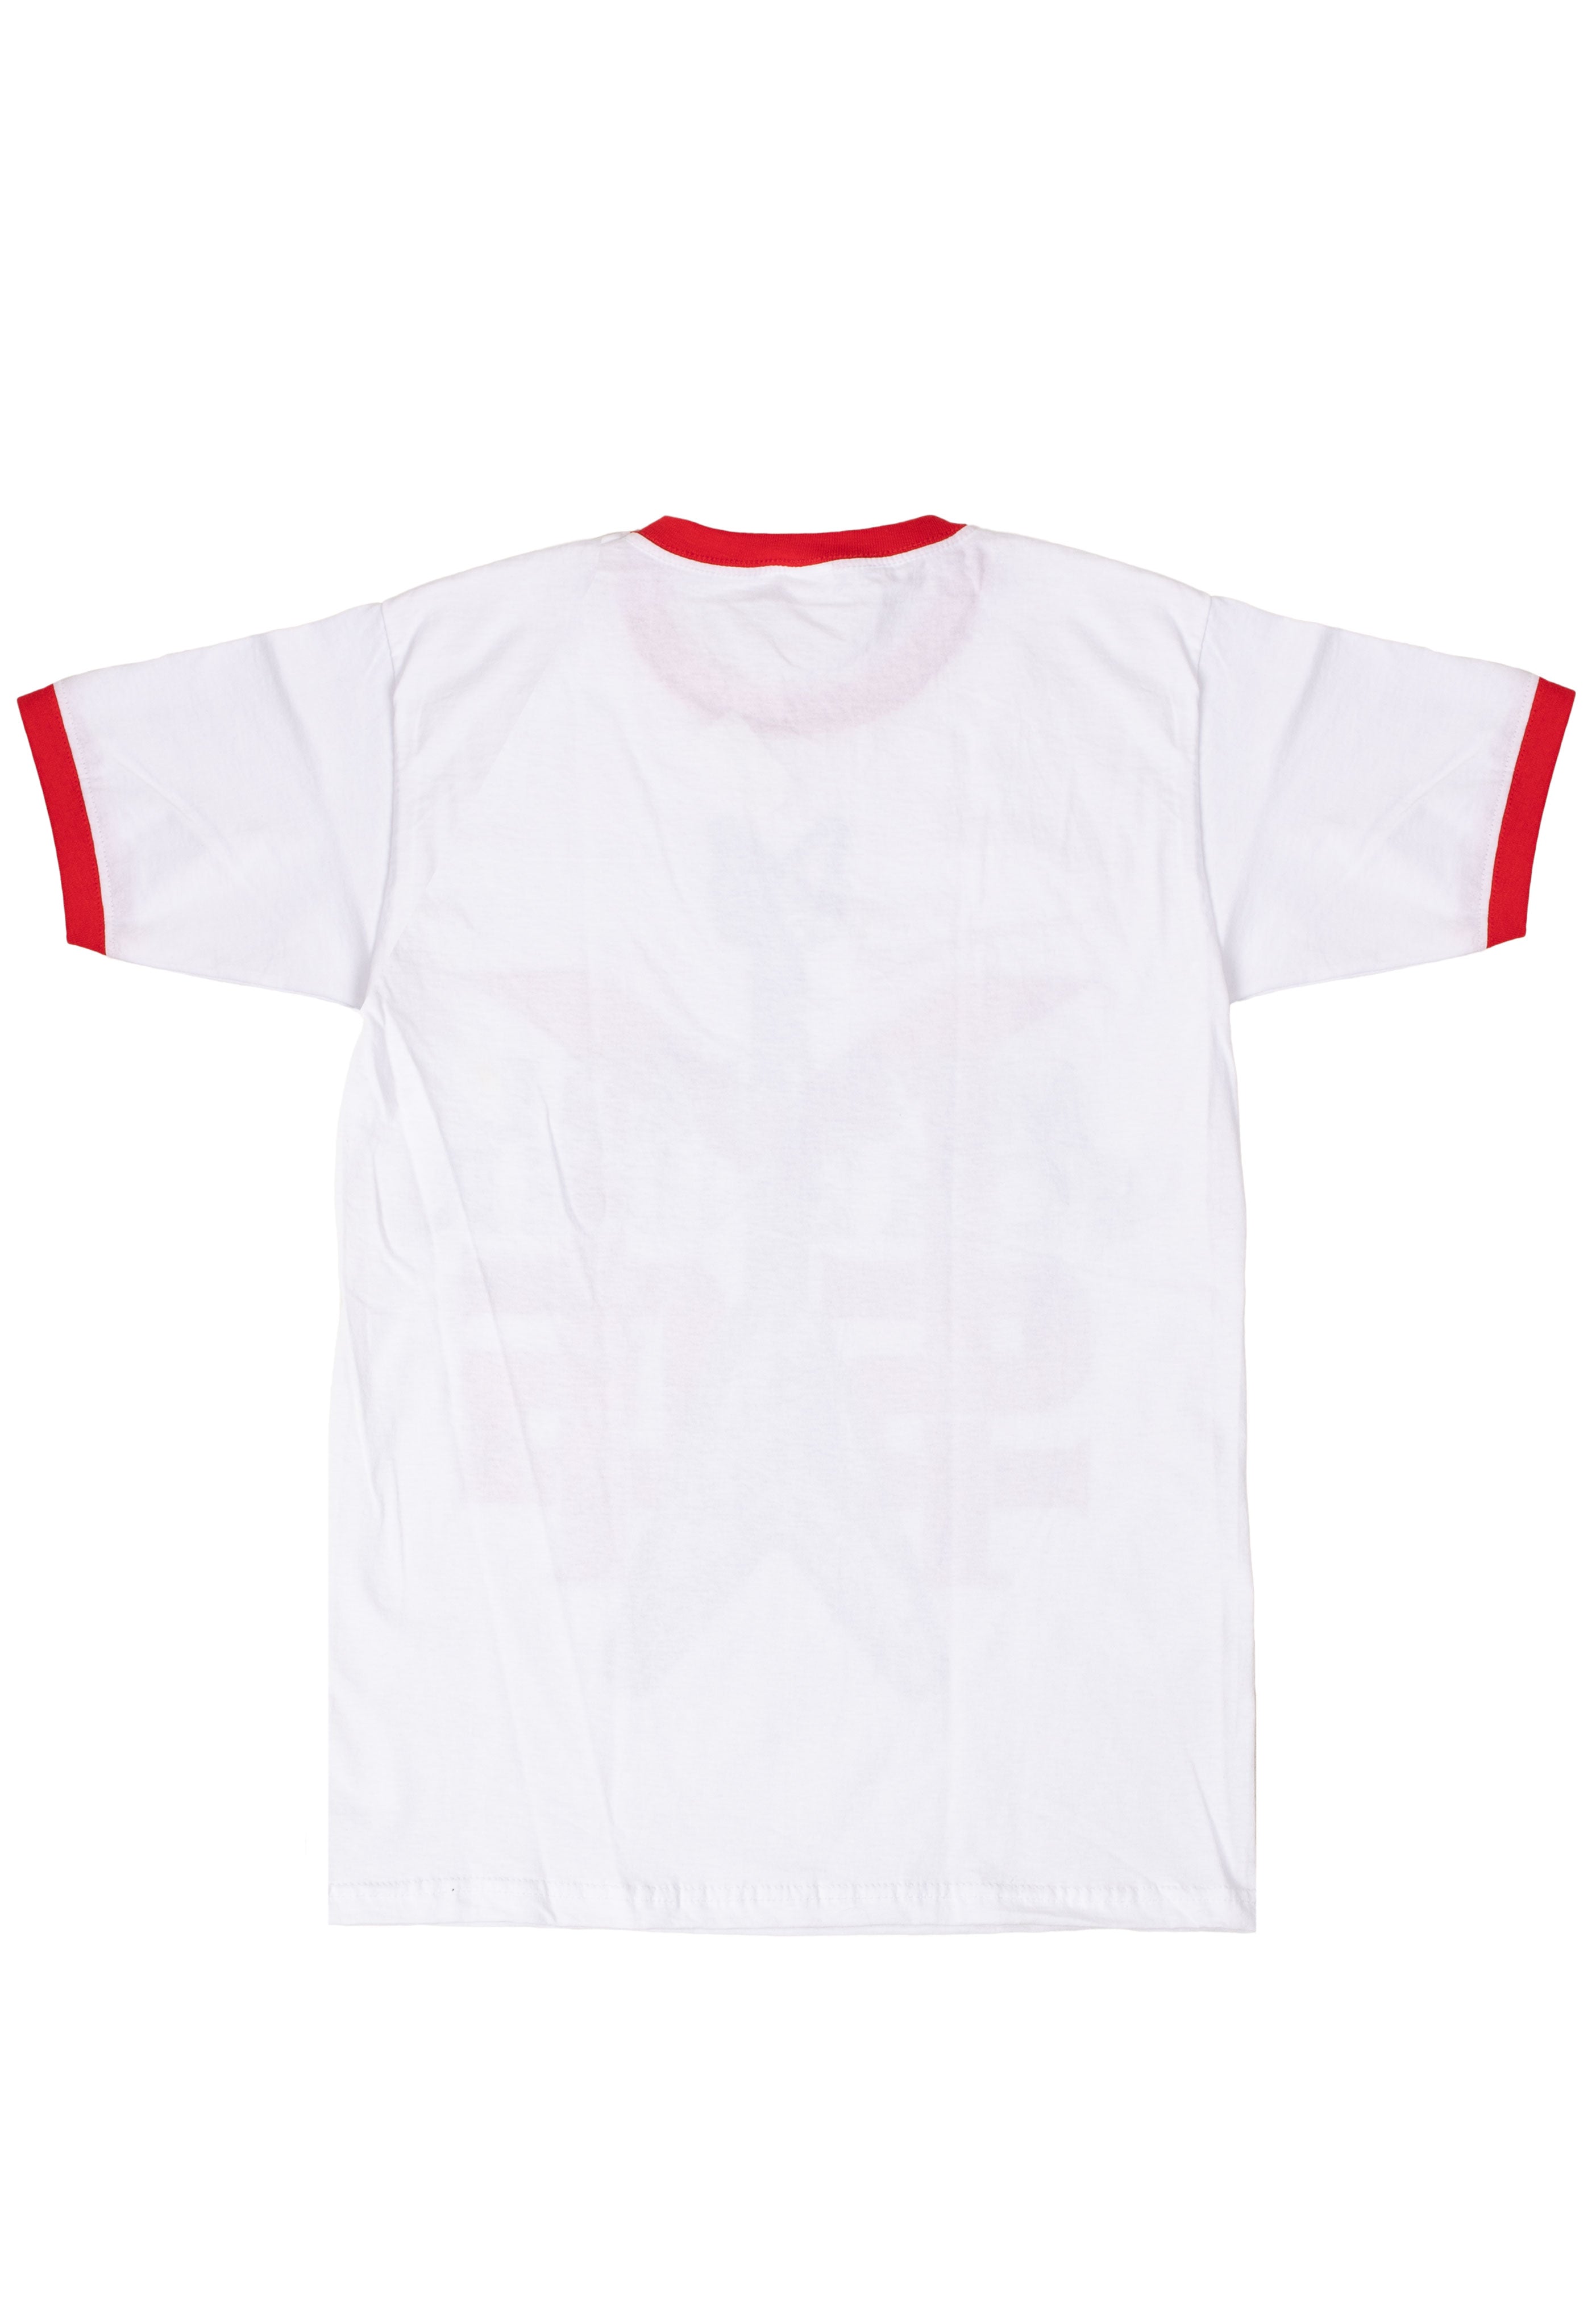 Msg (Michael Schenker Group) - Group Logo White - T-Shirt